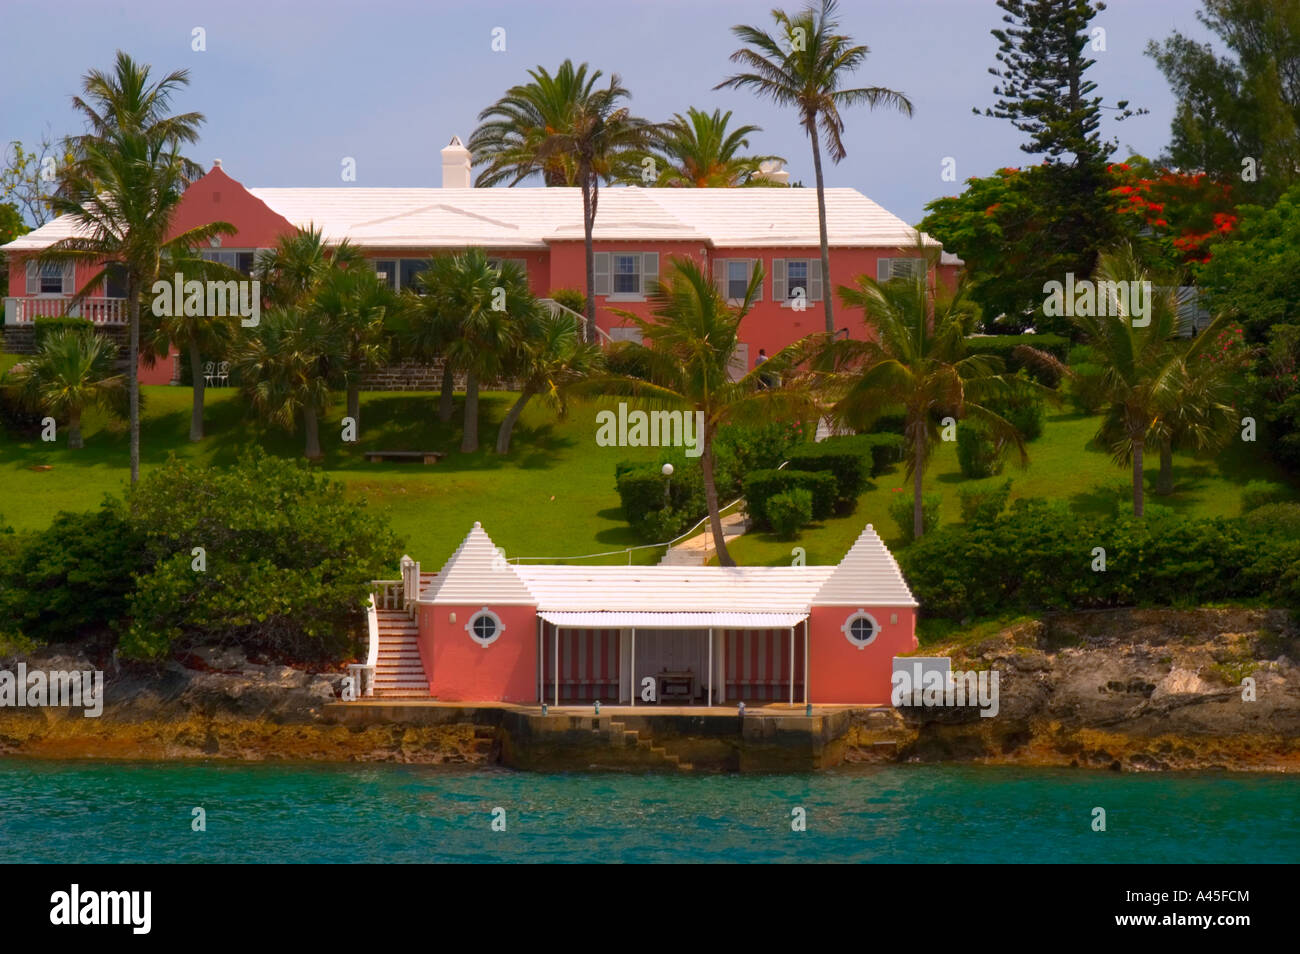 Maison à Pembroke Parish donnent sur la baie d'une remise à bateaux imite le design et la couleur de la demeure plus élevé sur la colline Banque D'Images